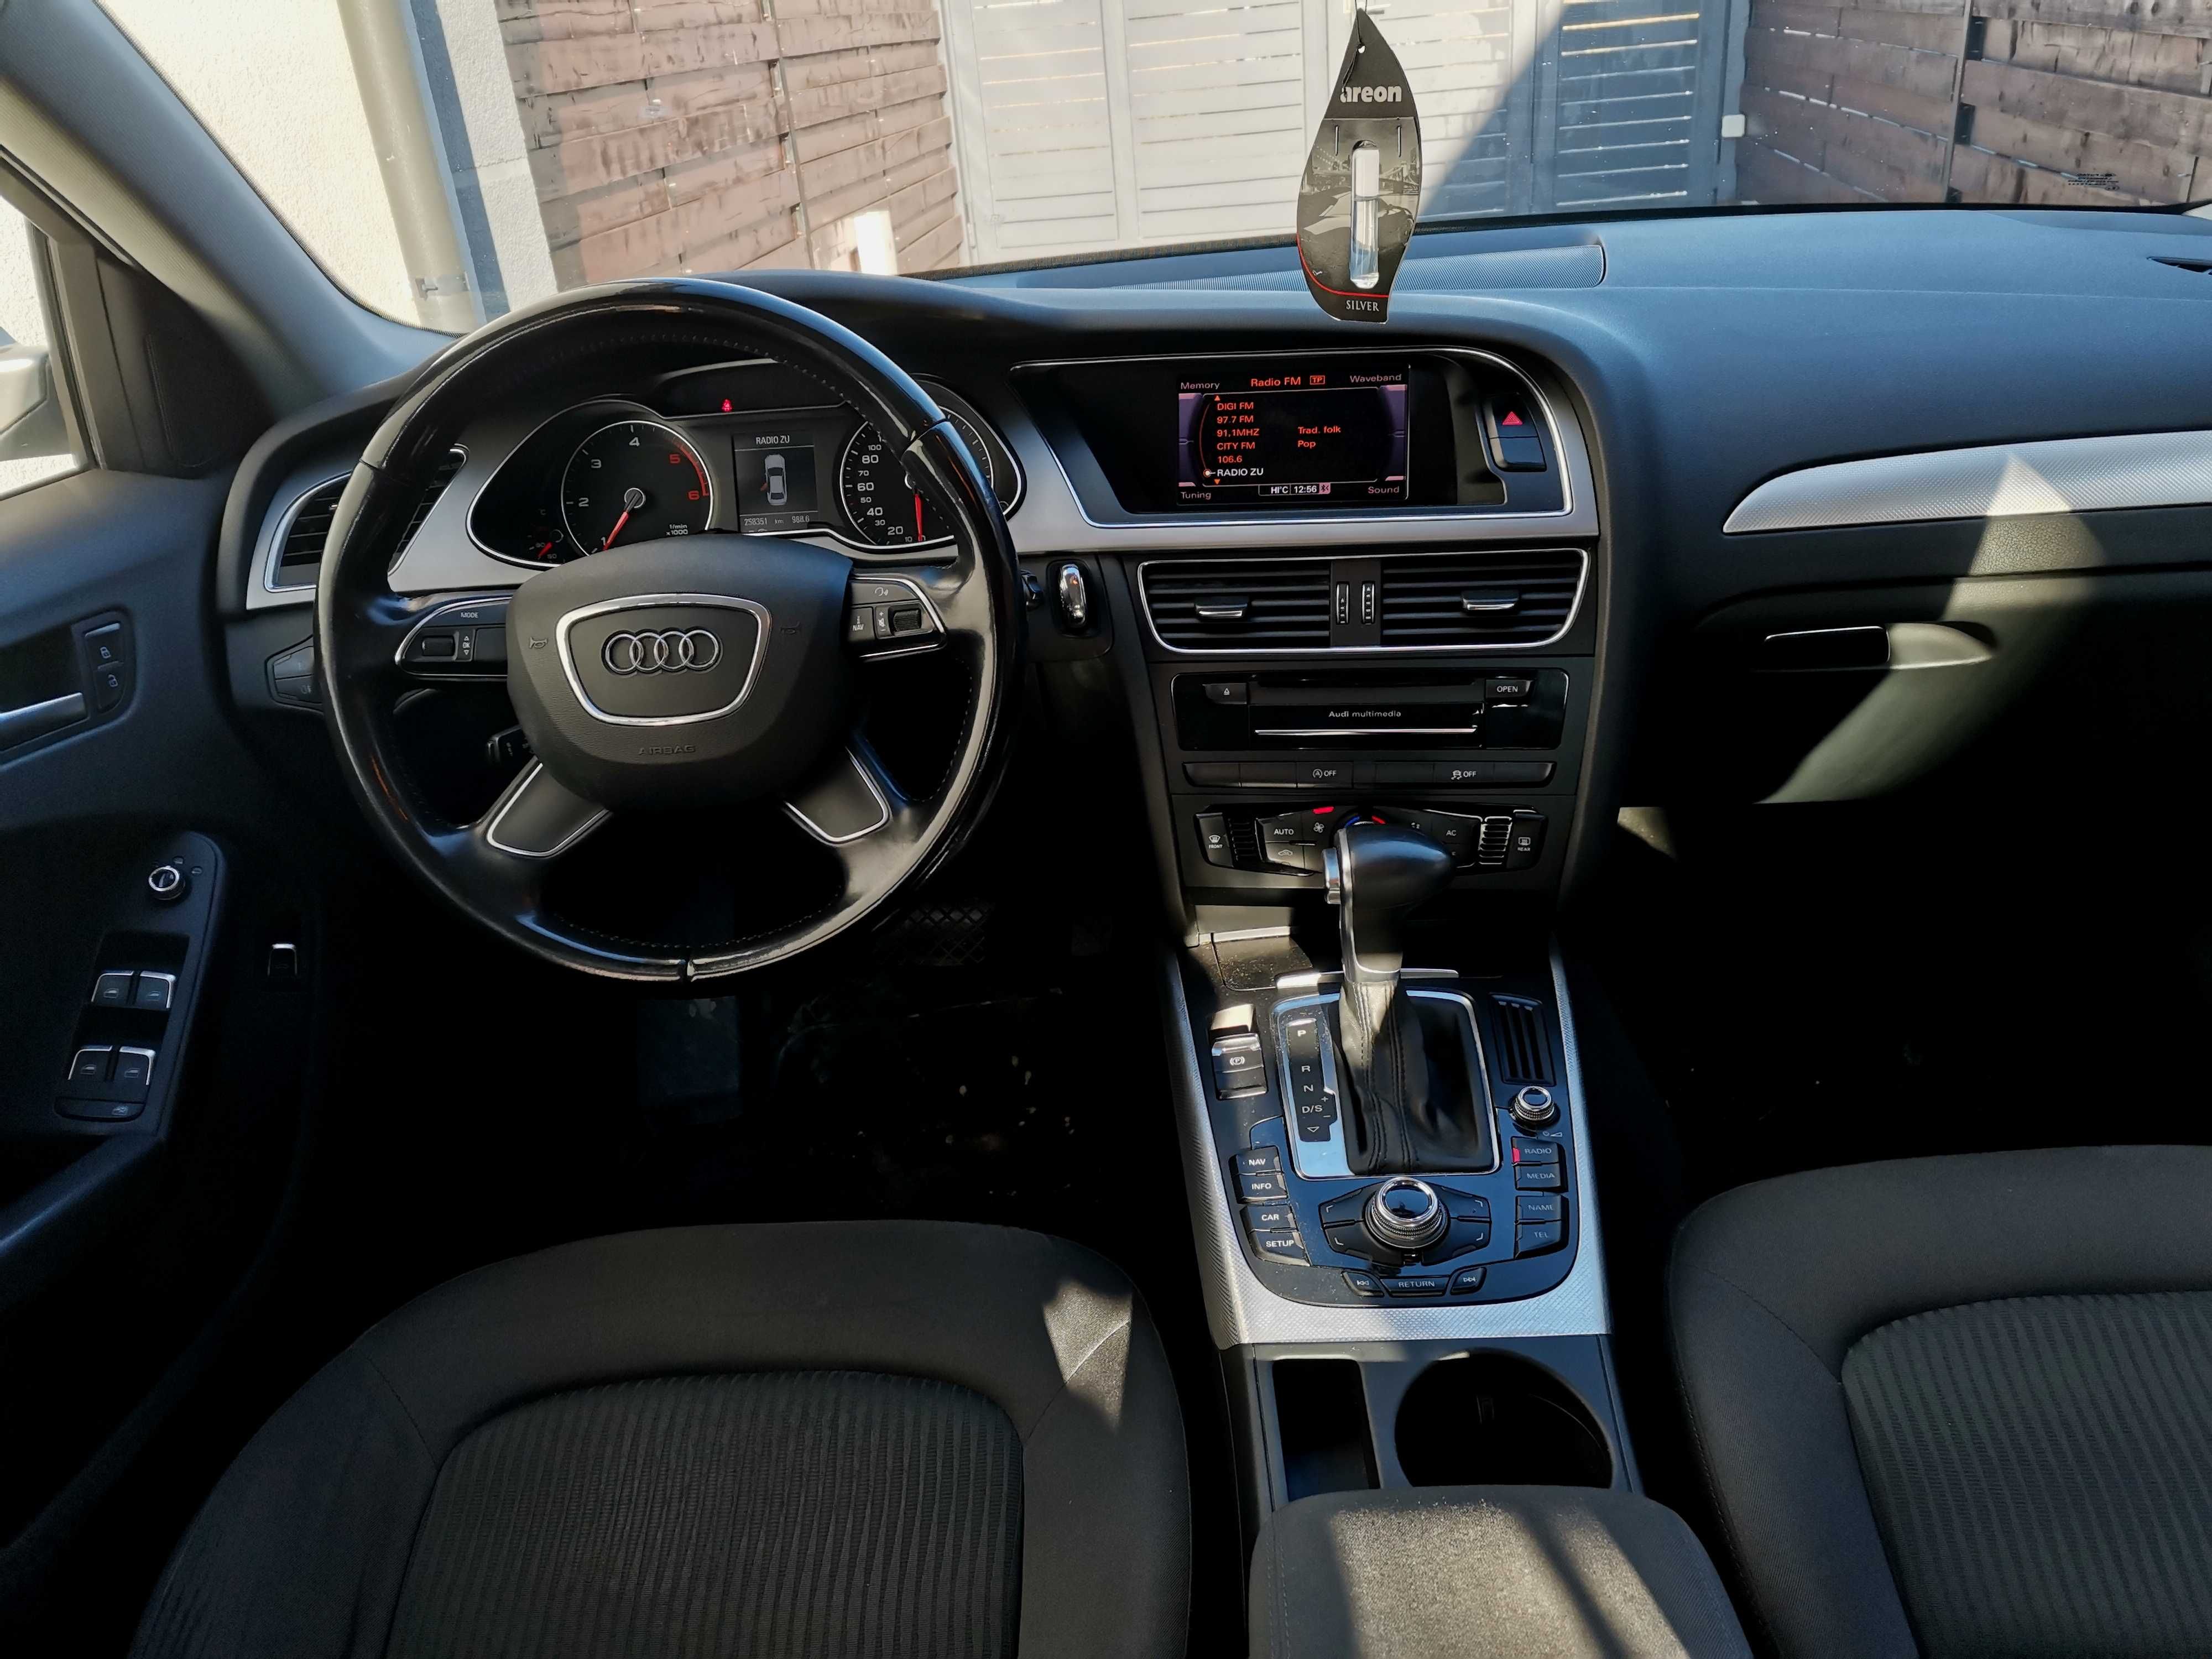 Audi A4 2014, 2.0 TDI-150 cp, cutie automata, xenon, navigatie